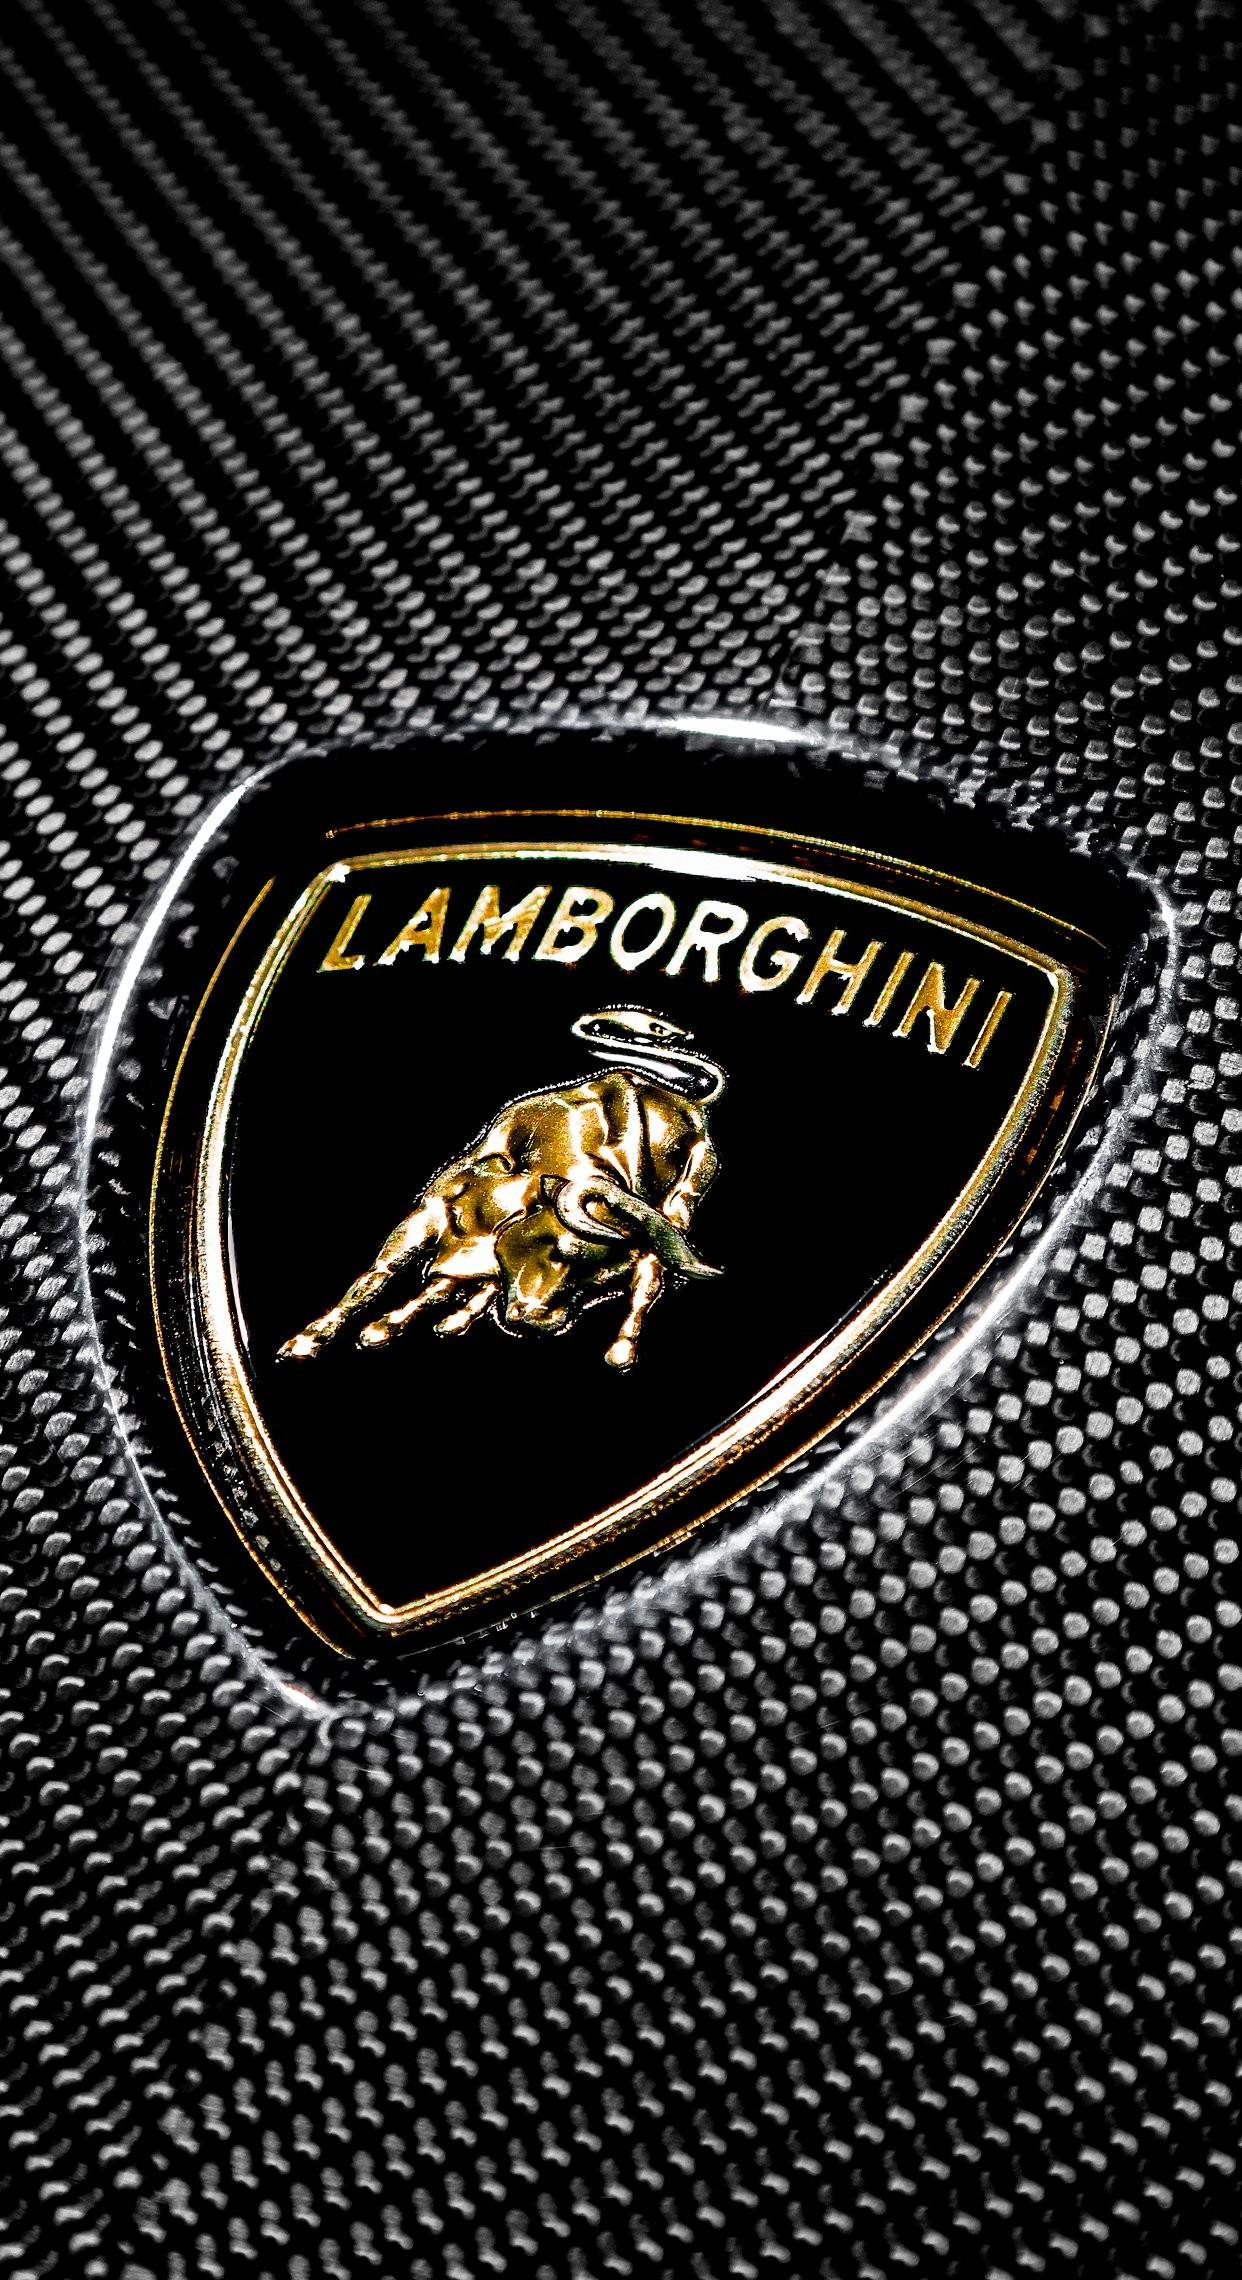 Lamborghini Logo HD Mobile Wallpapers - Wallpaper Cave